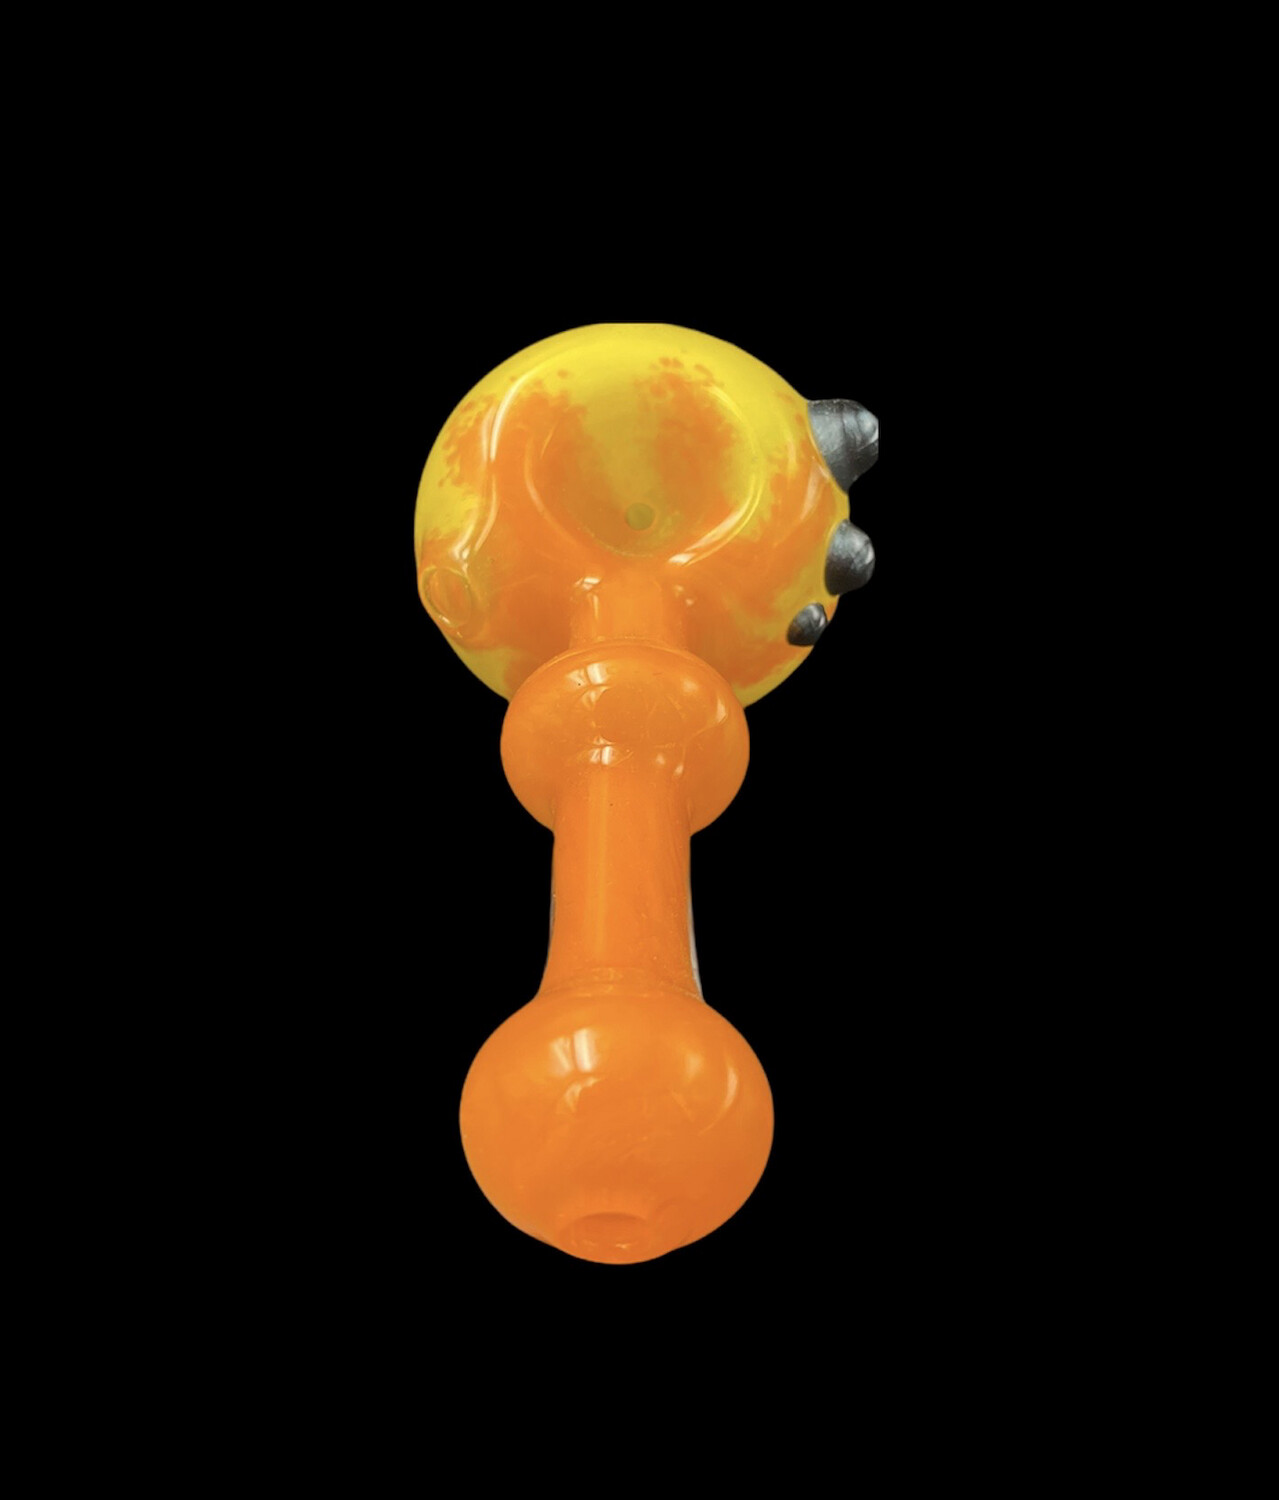 Goblin King (TX) Frit Spoon - Orange to Yellow